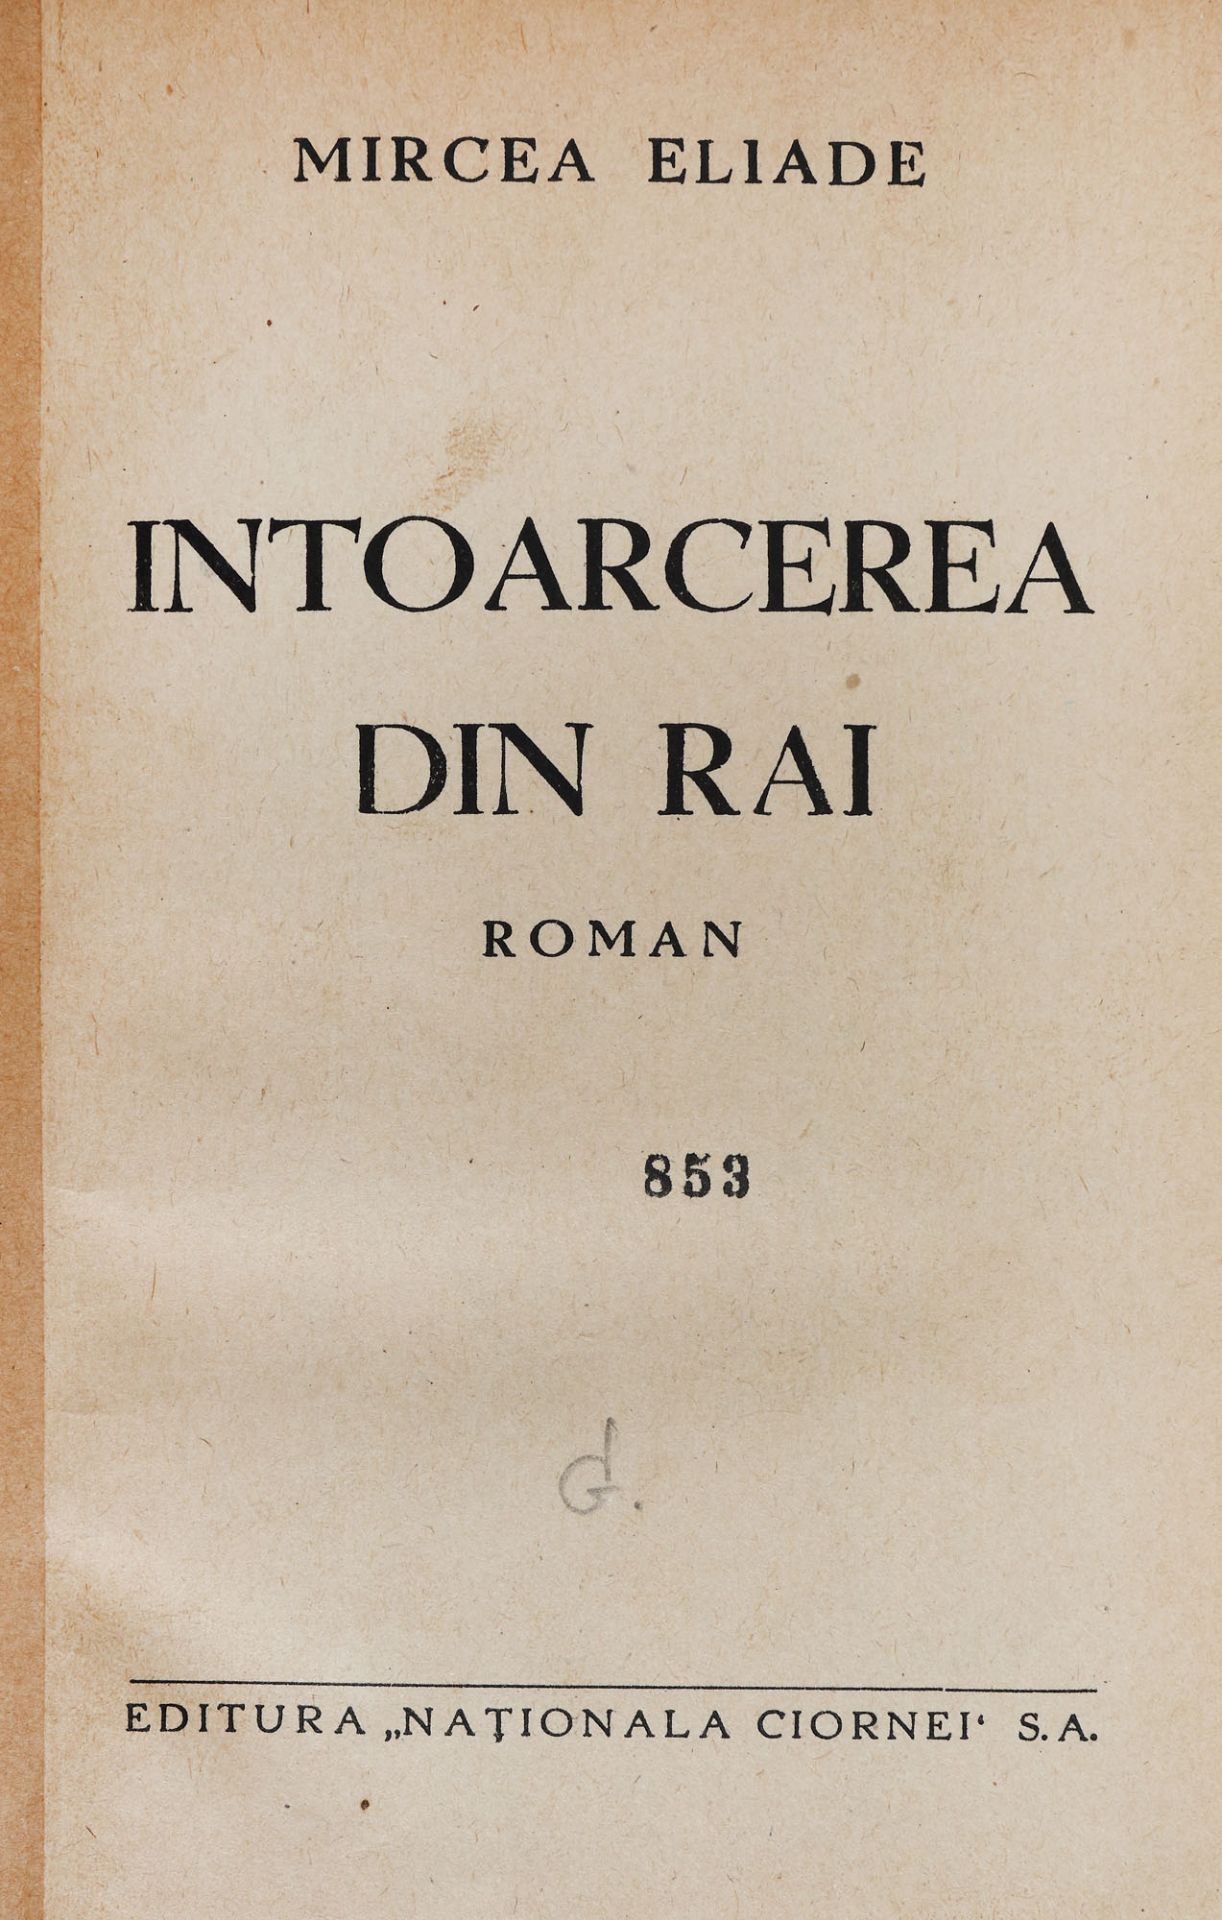 "Întoarcerea din rai", by Mircea Eliade, editio princeps, Bucharest, 1933, with the author's dedicat - Image 2 of 3